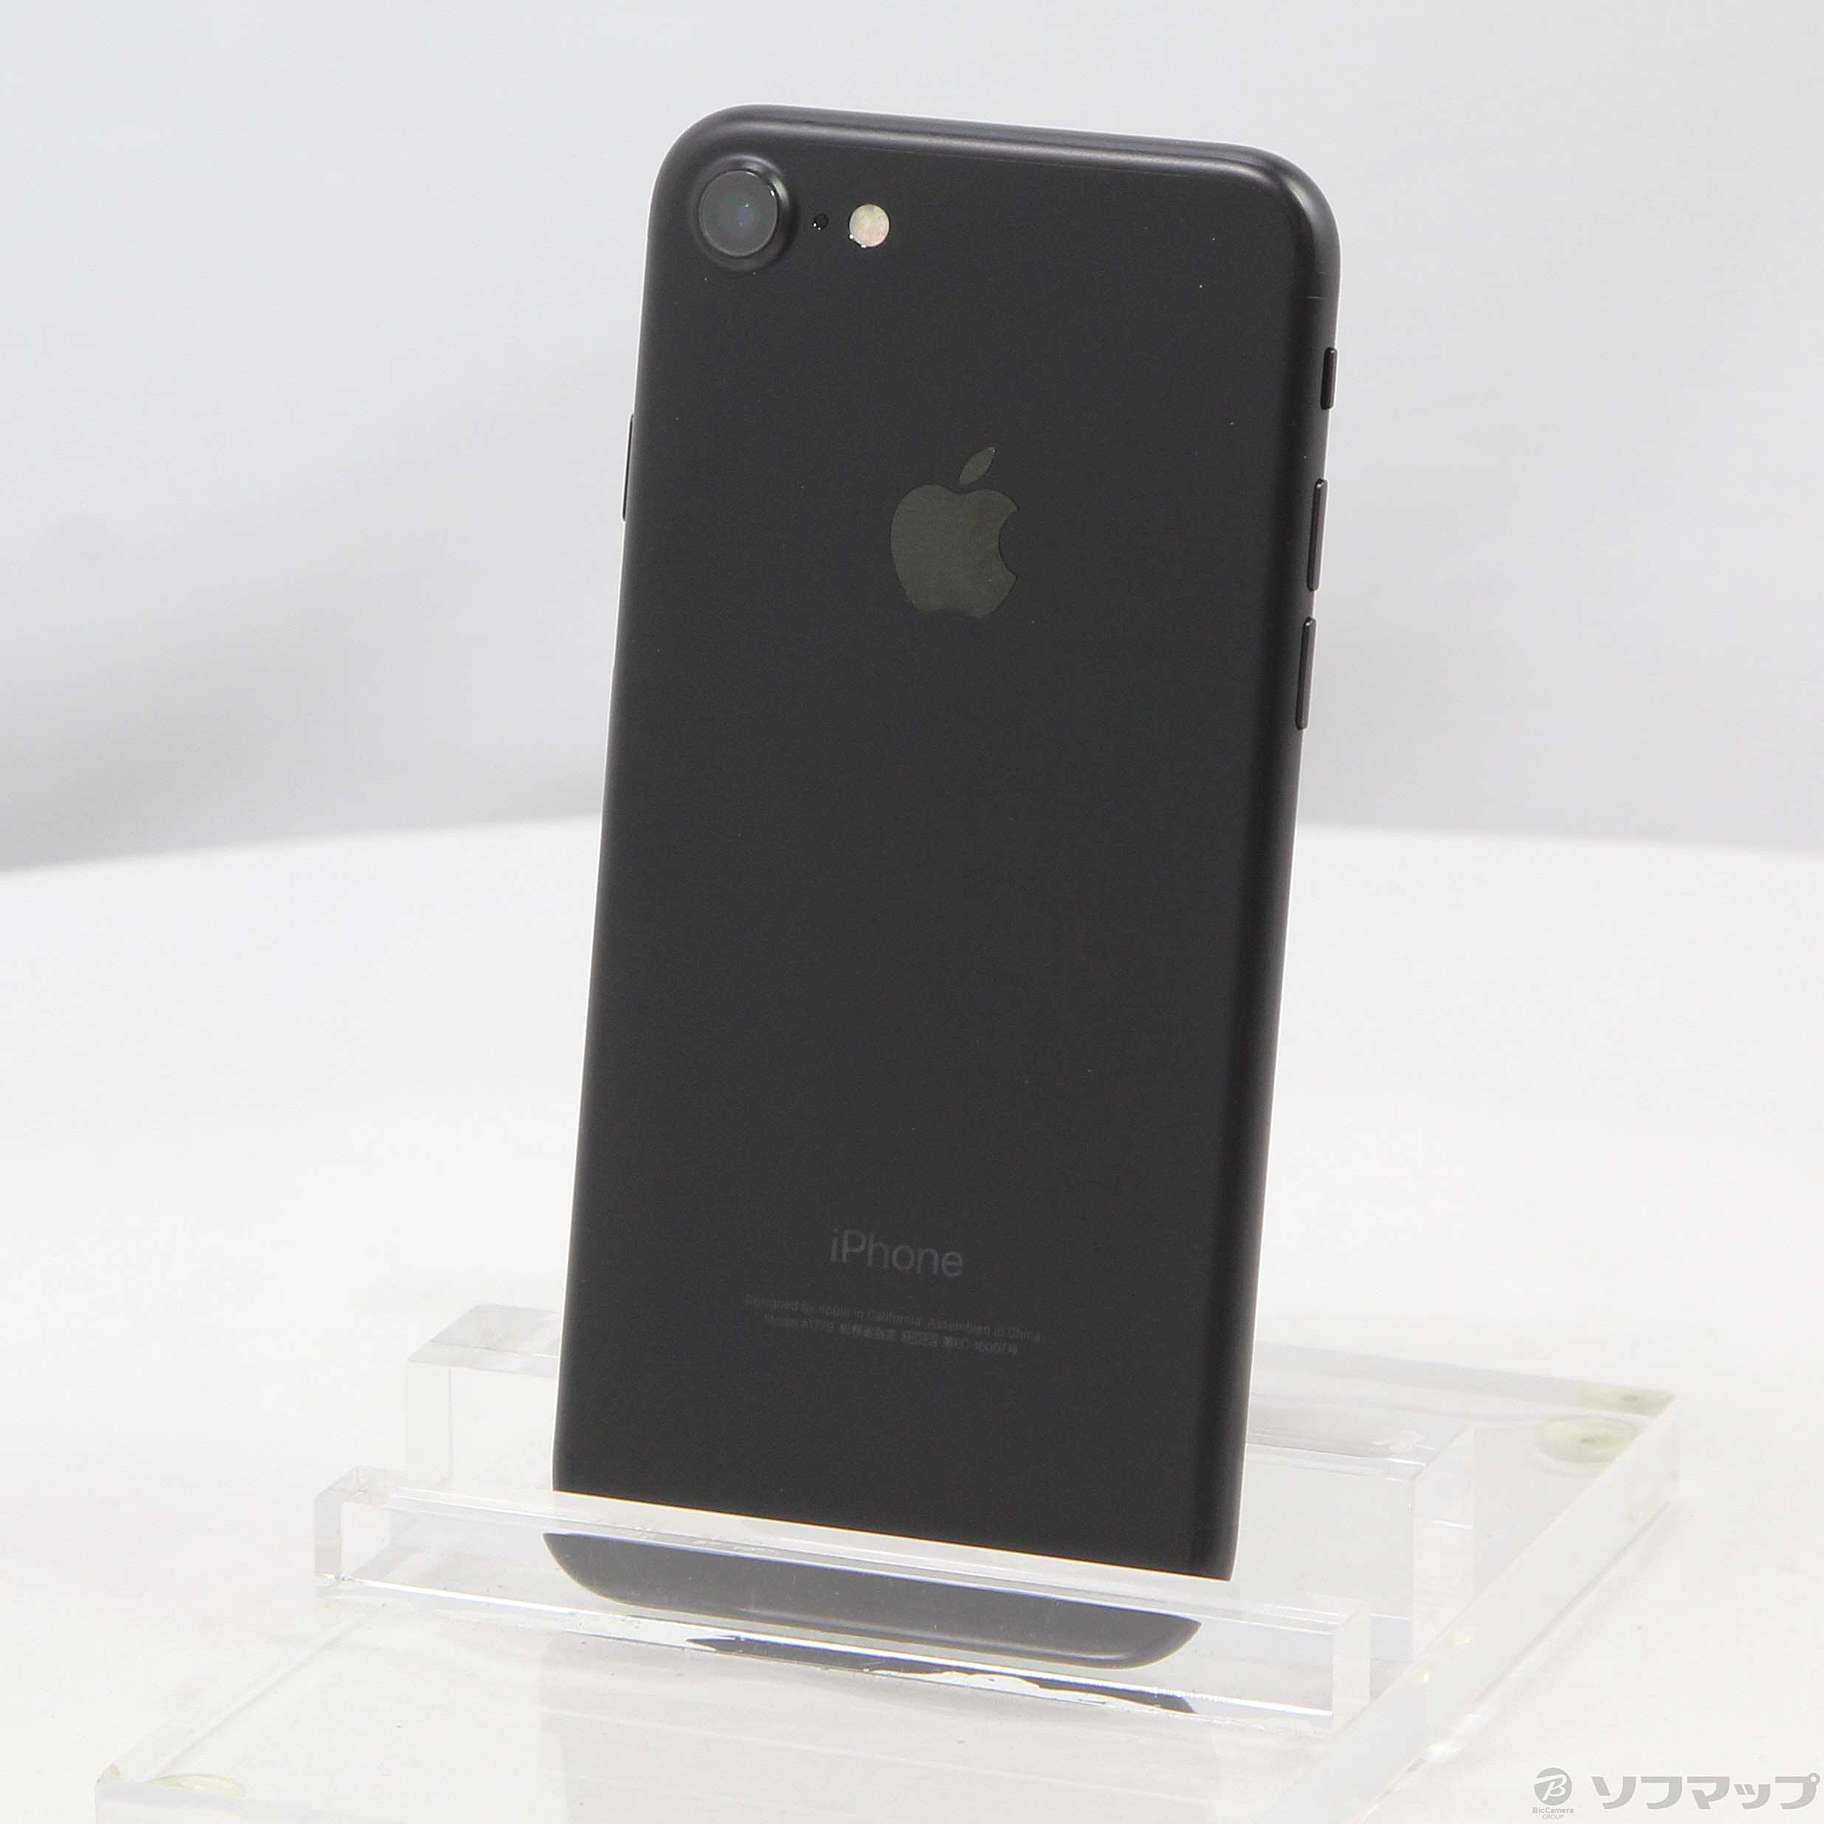 iPhone7 アイフォン7 32G ブラック